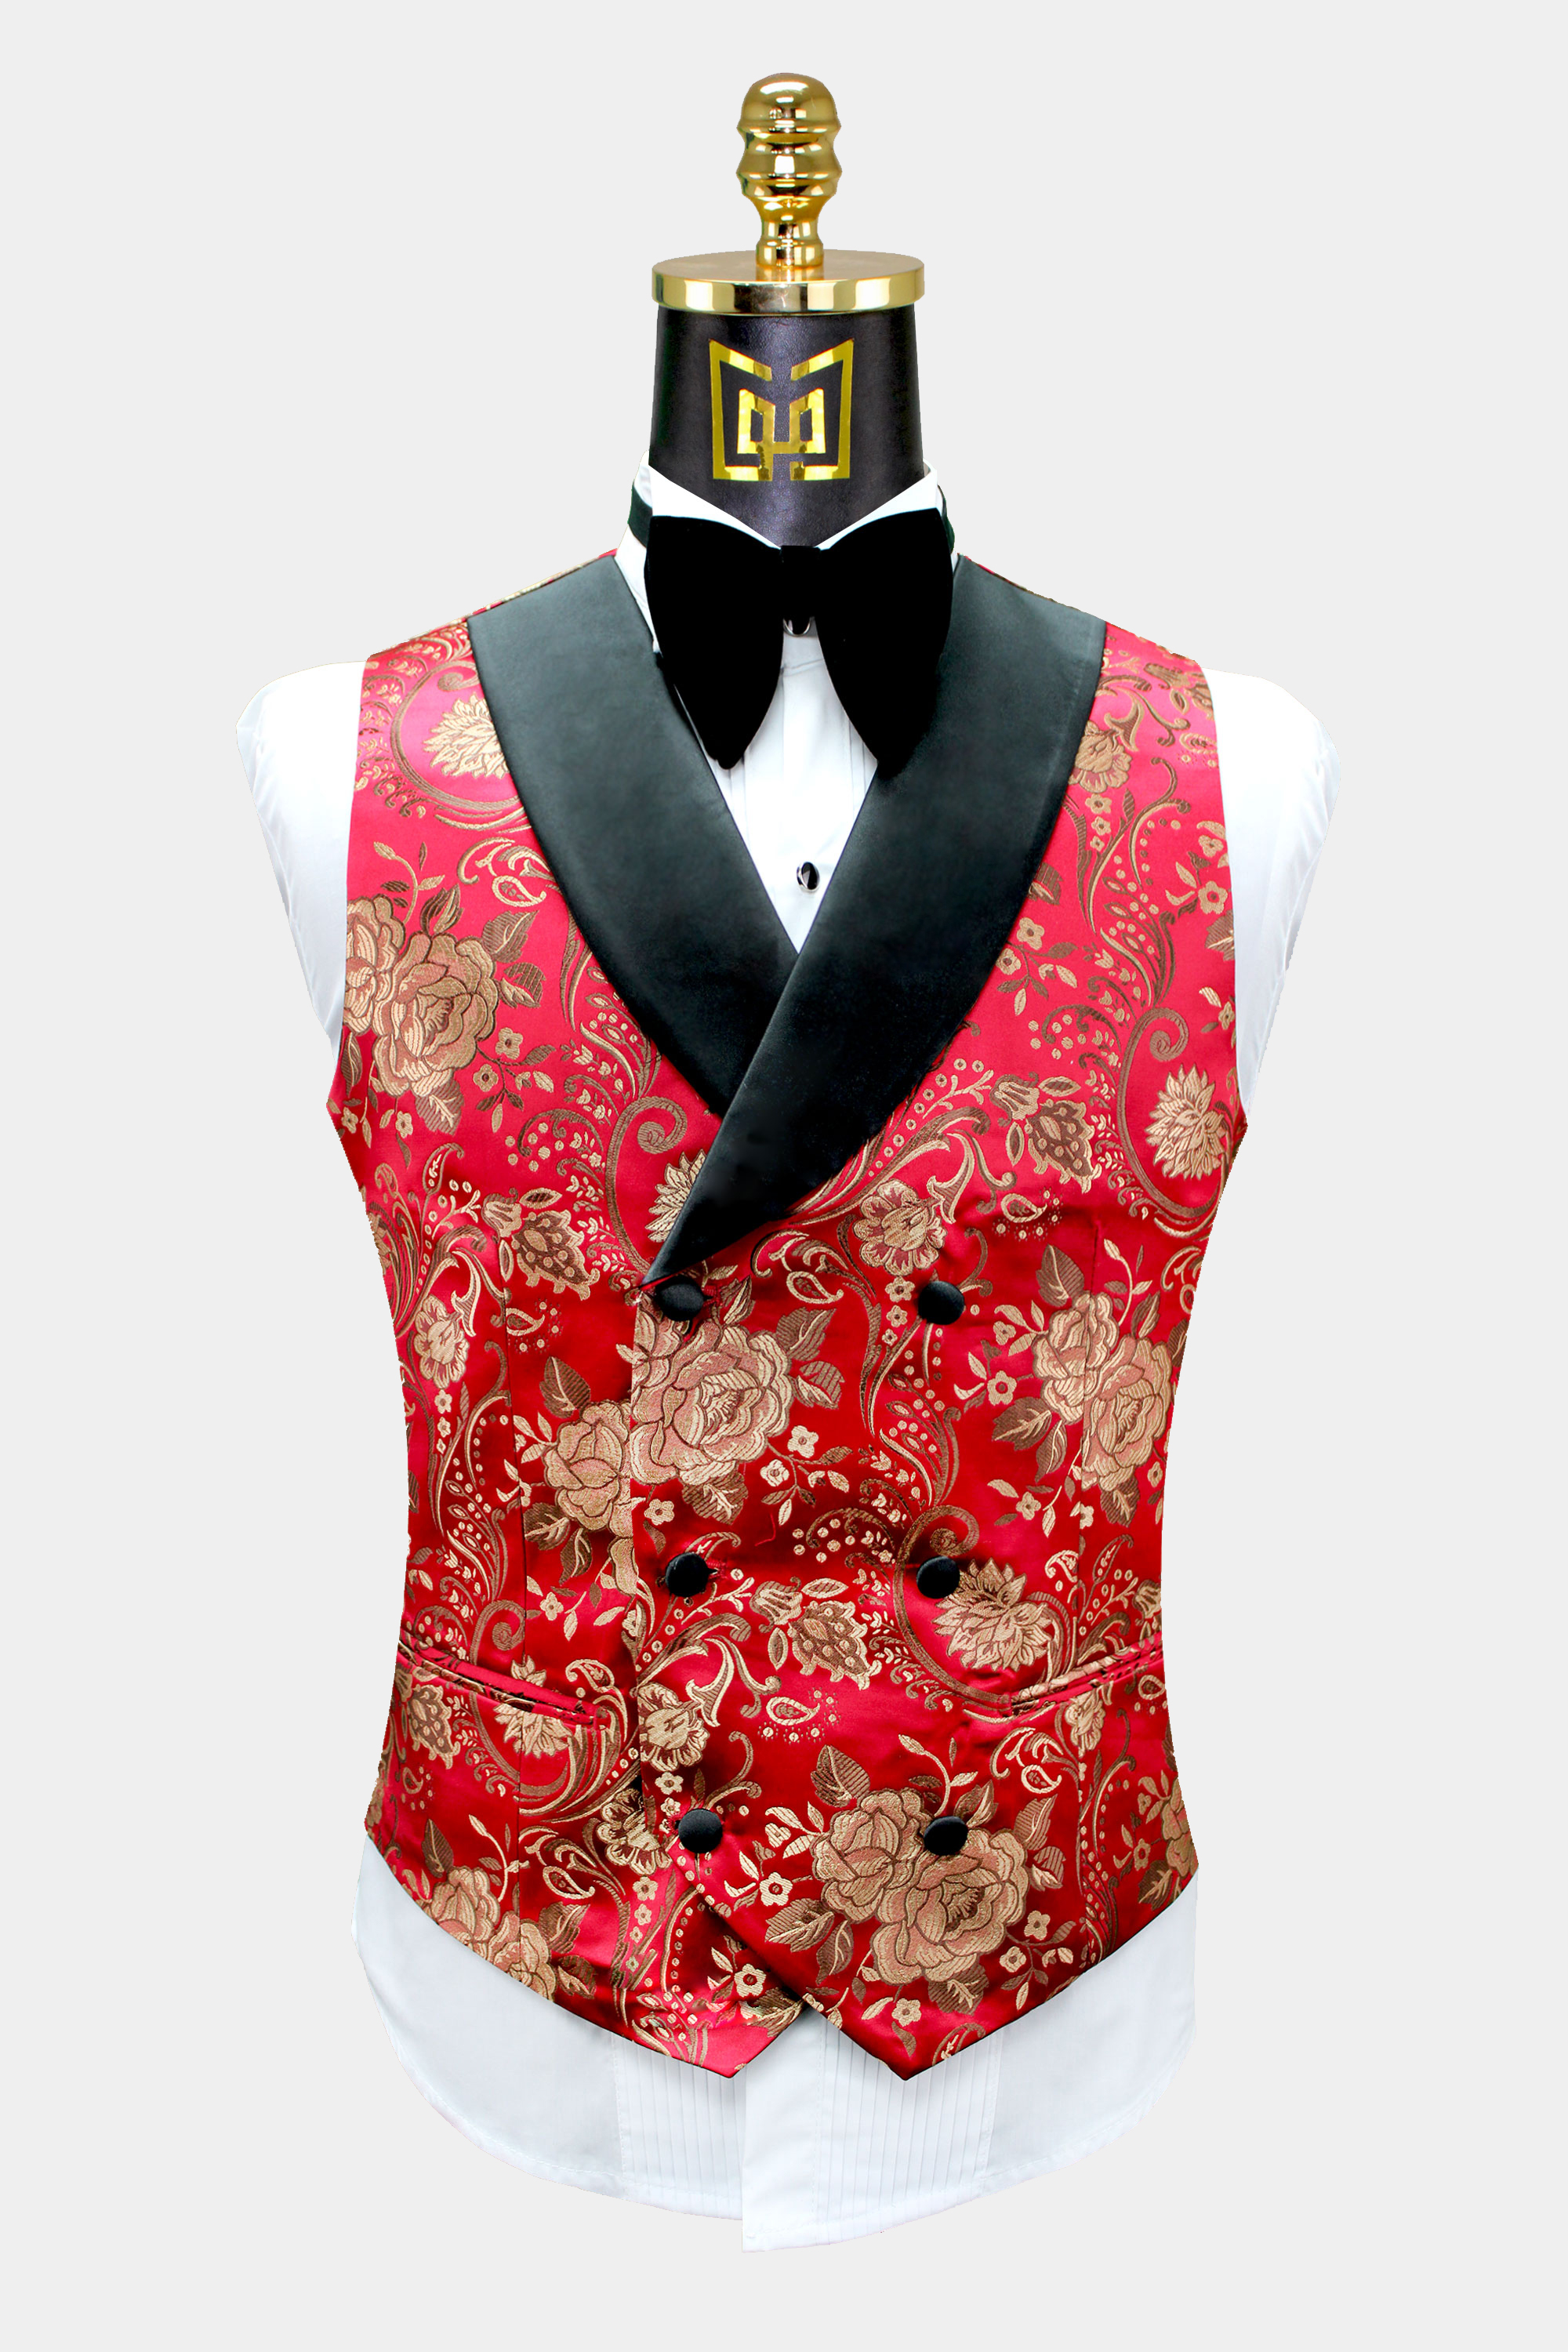 Mens-Red-and-Gold-Tuxedo-Vest-Wedding-Waistcoat-from-Gentlemansguru.com_.jpg